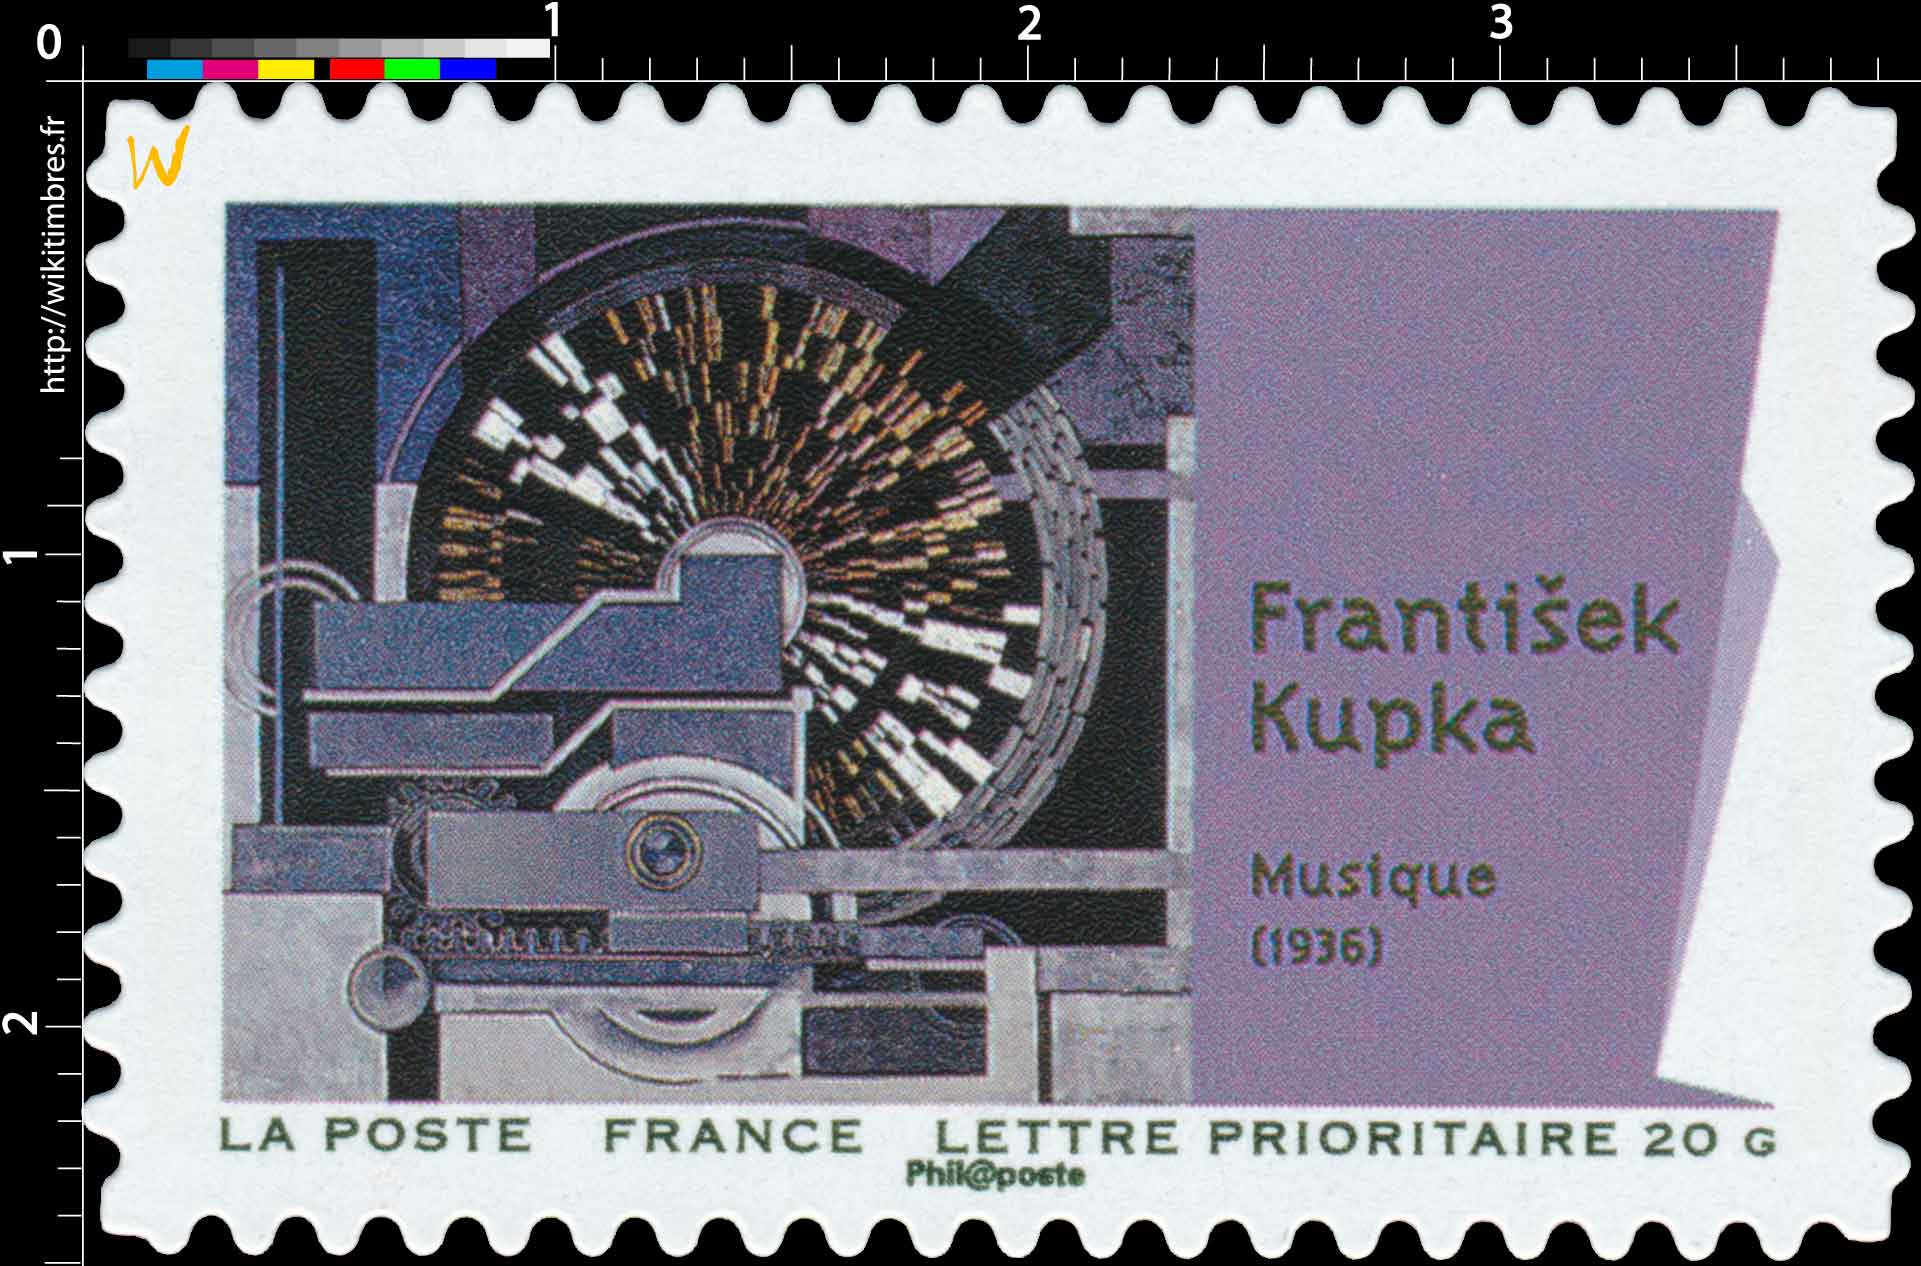 Frantisek Kupka Musique (1936)